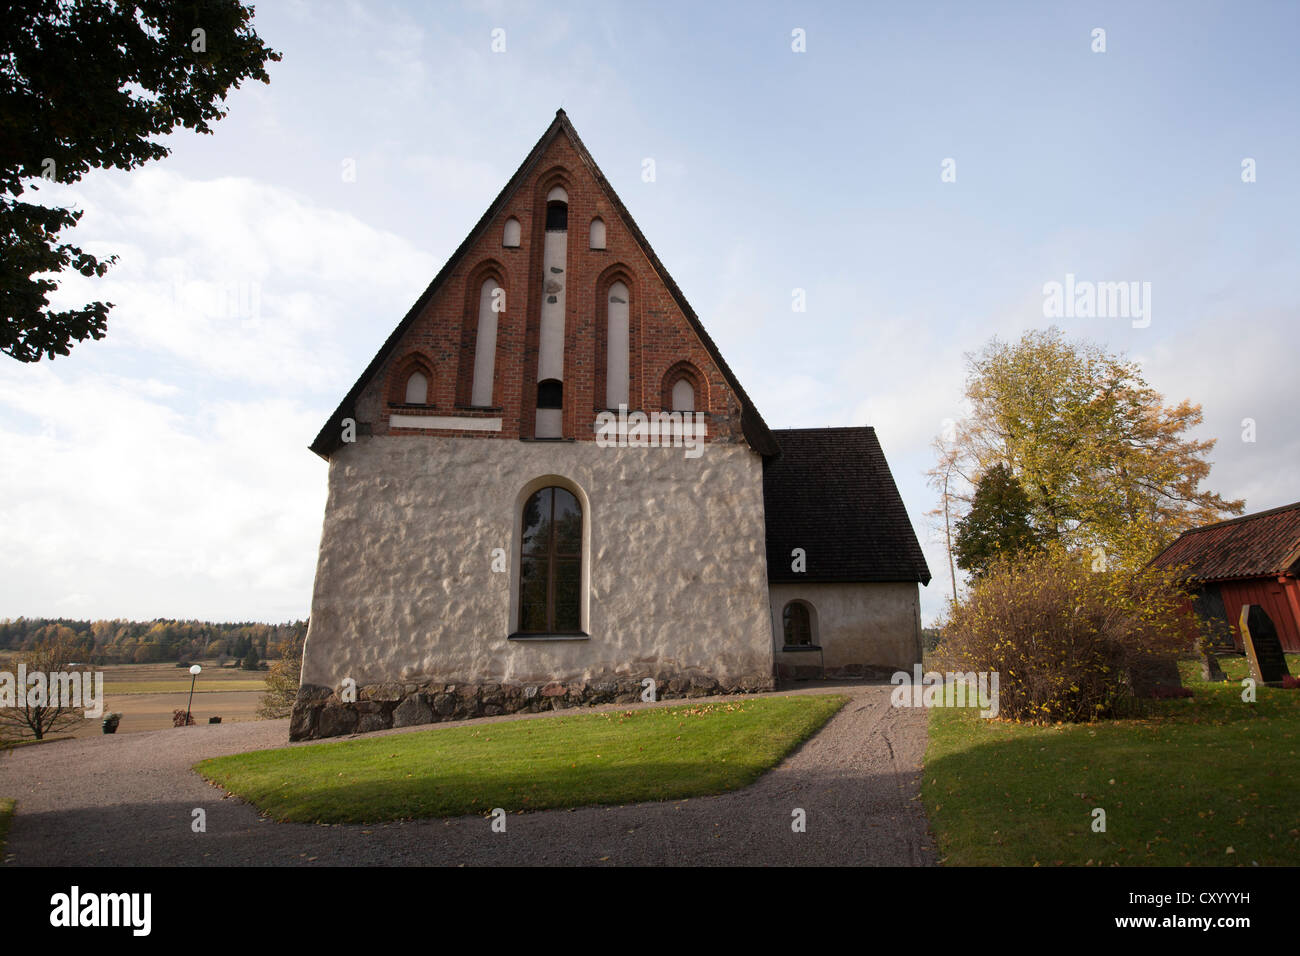 Vieille église Knivsta en Suède, de l'automne. Datant du début du 14e siècle, l'église de style gothique a été dédiée à St Stefan. Banque D'Images